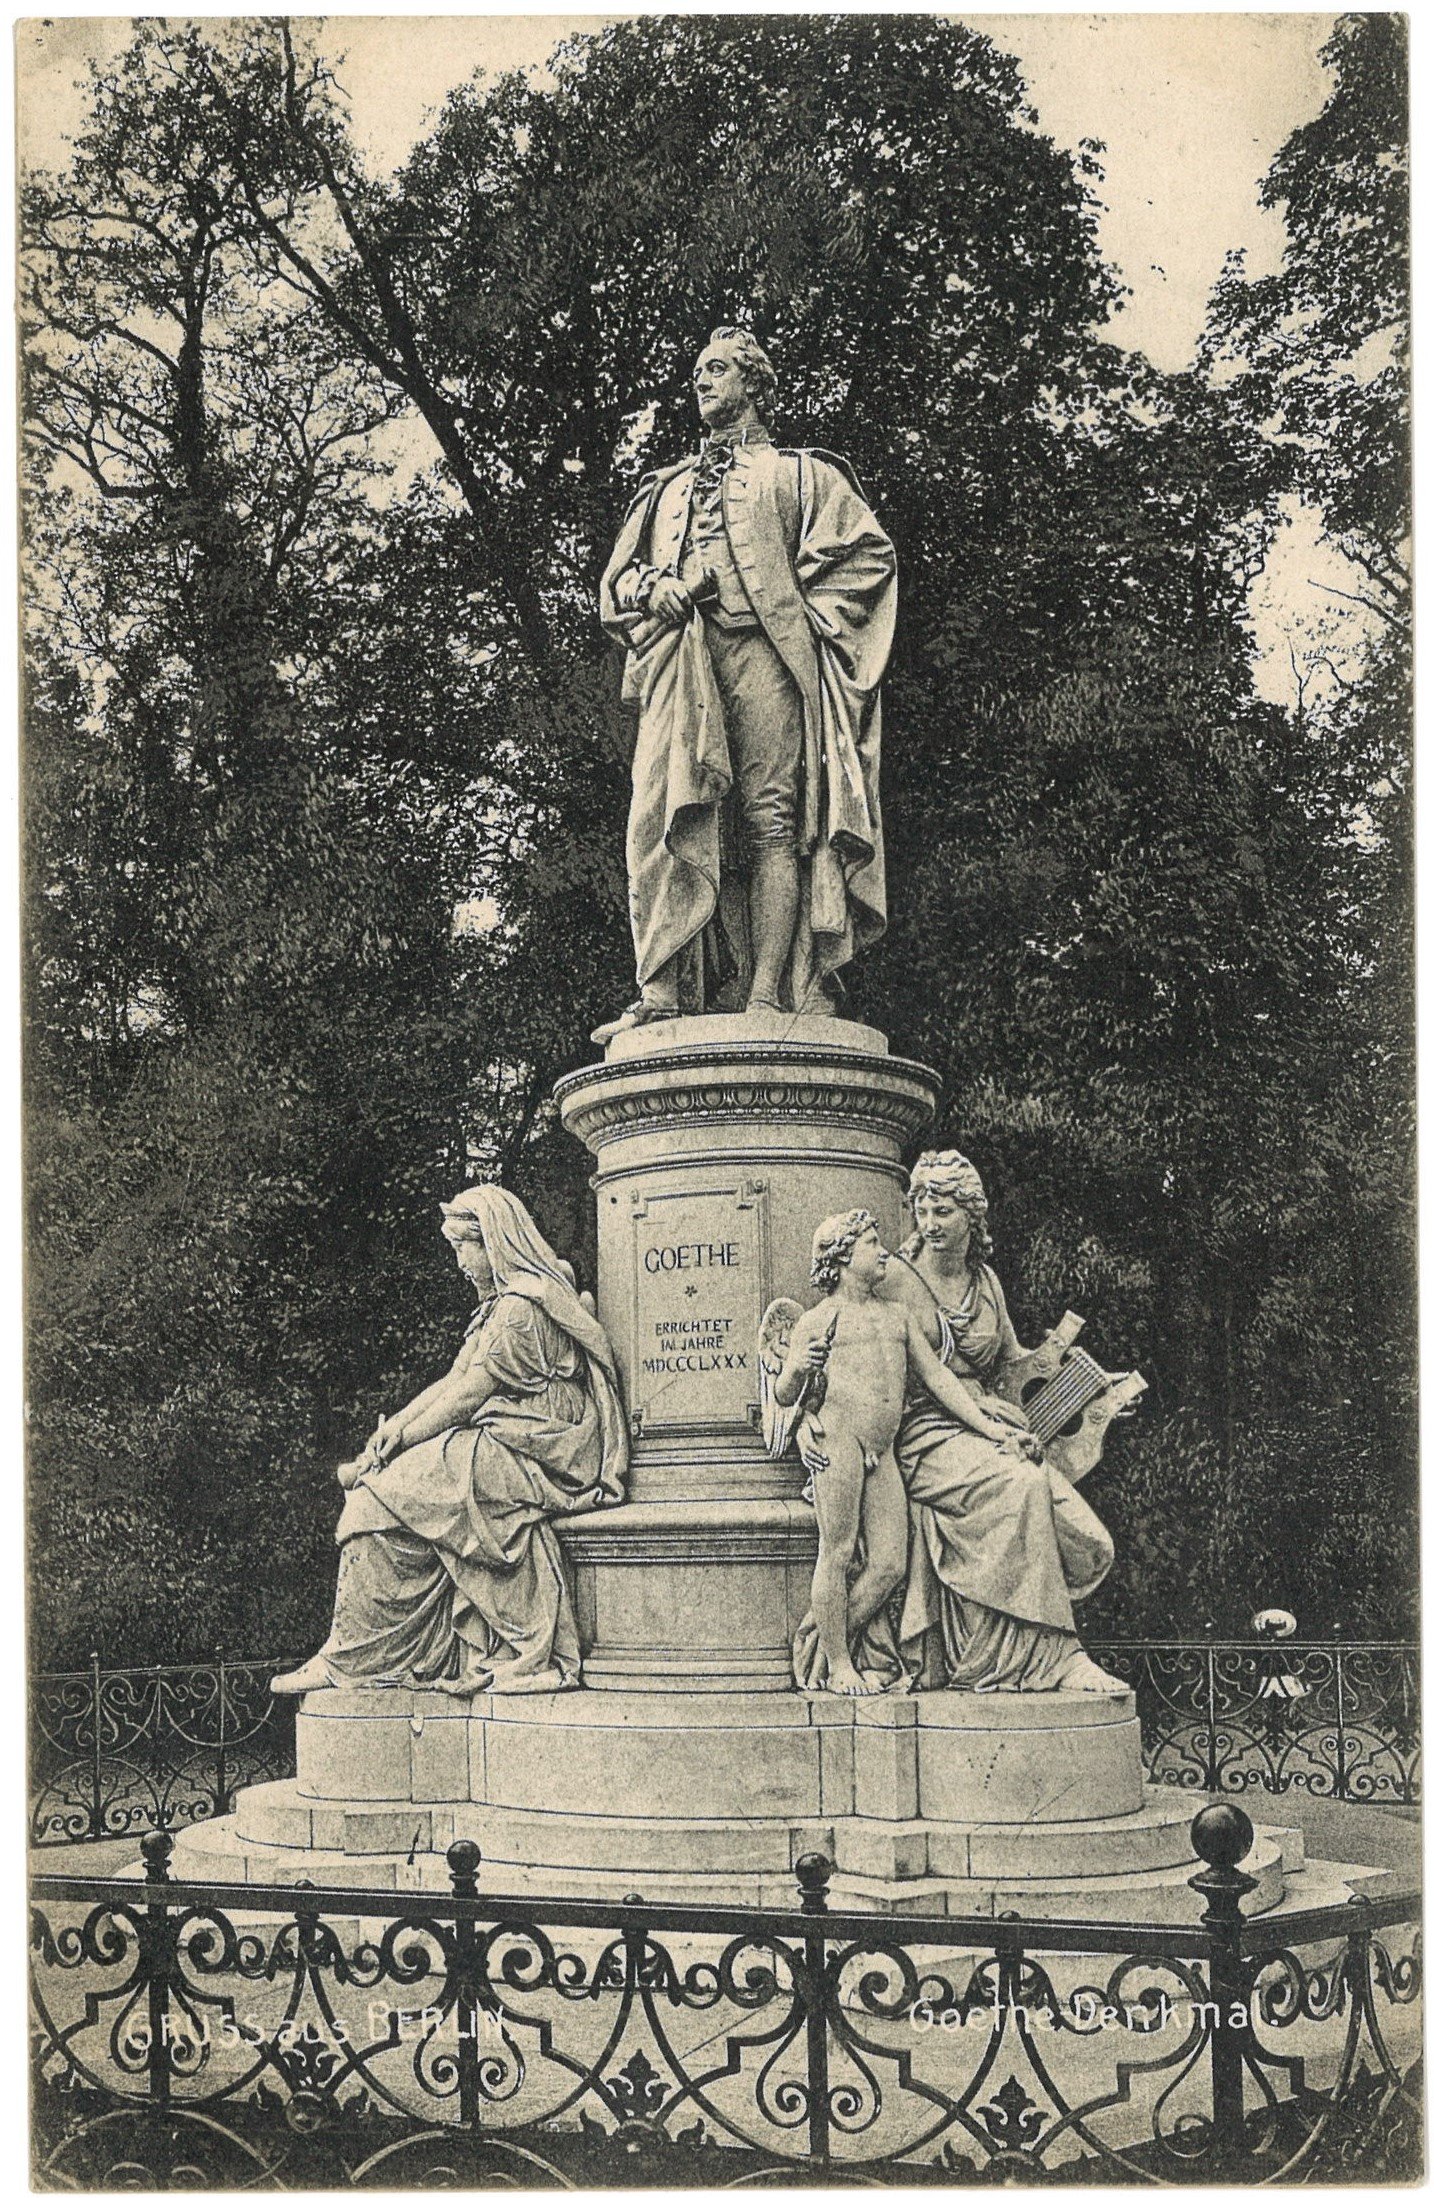 Berlin-Tiergarten: Goethe-Denkmal (Landesgeschichtliche Vereinigung für die Mark Brandenburg e.V. CC BY)